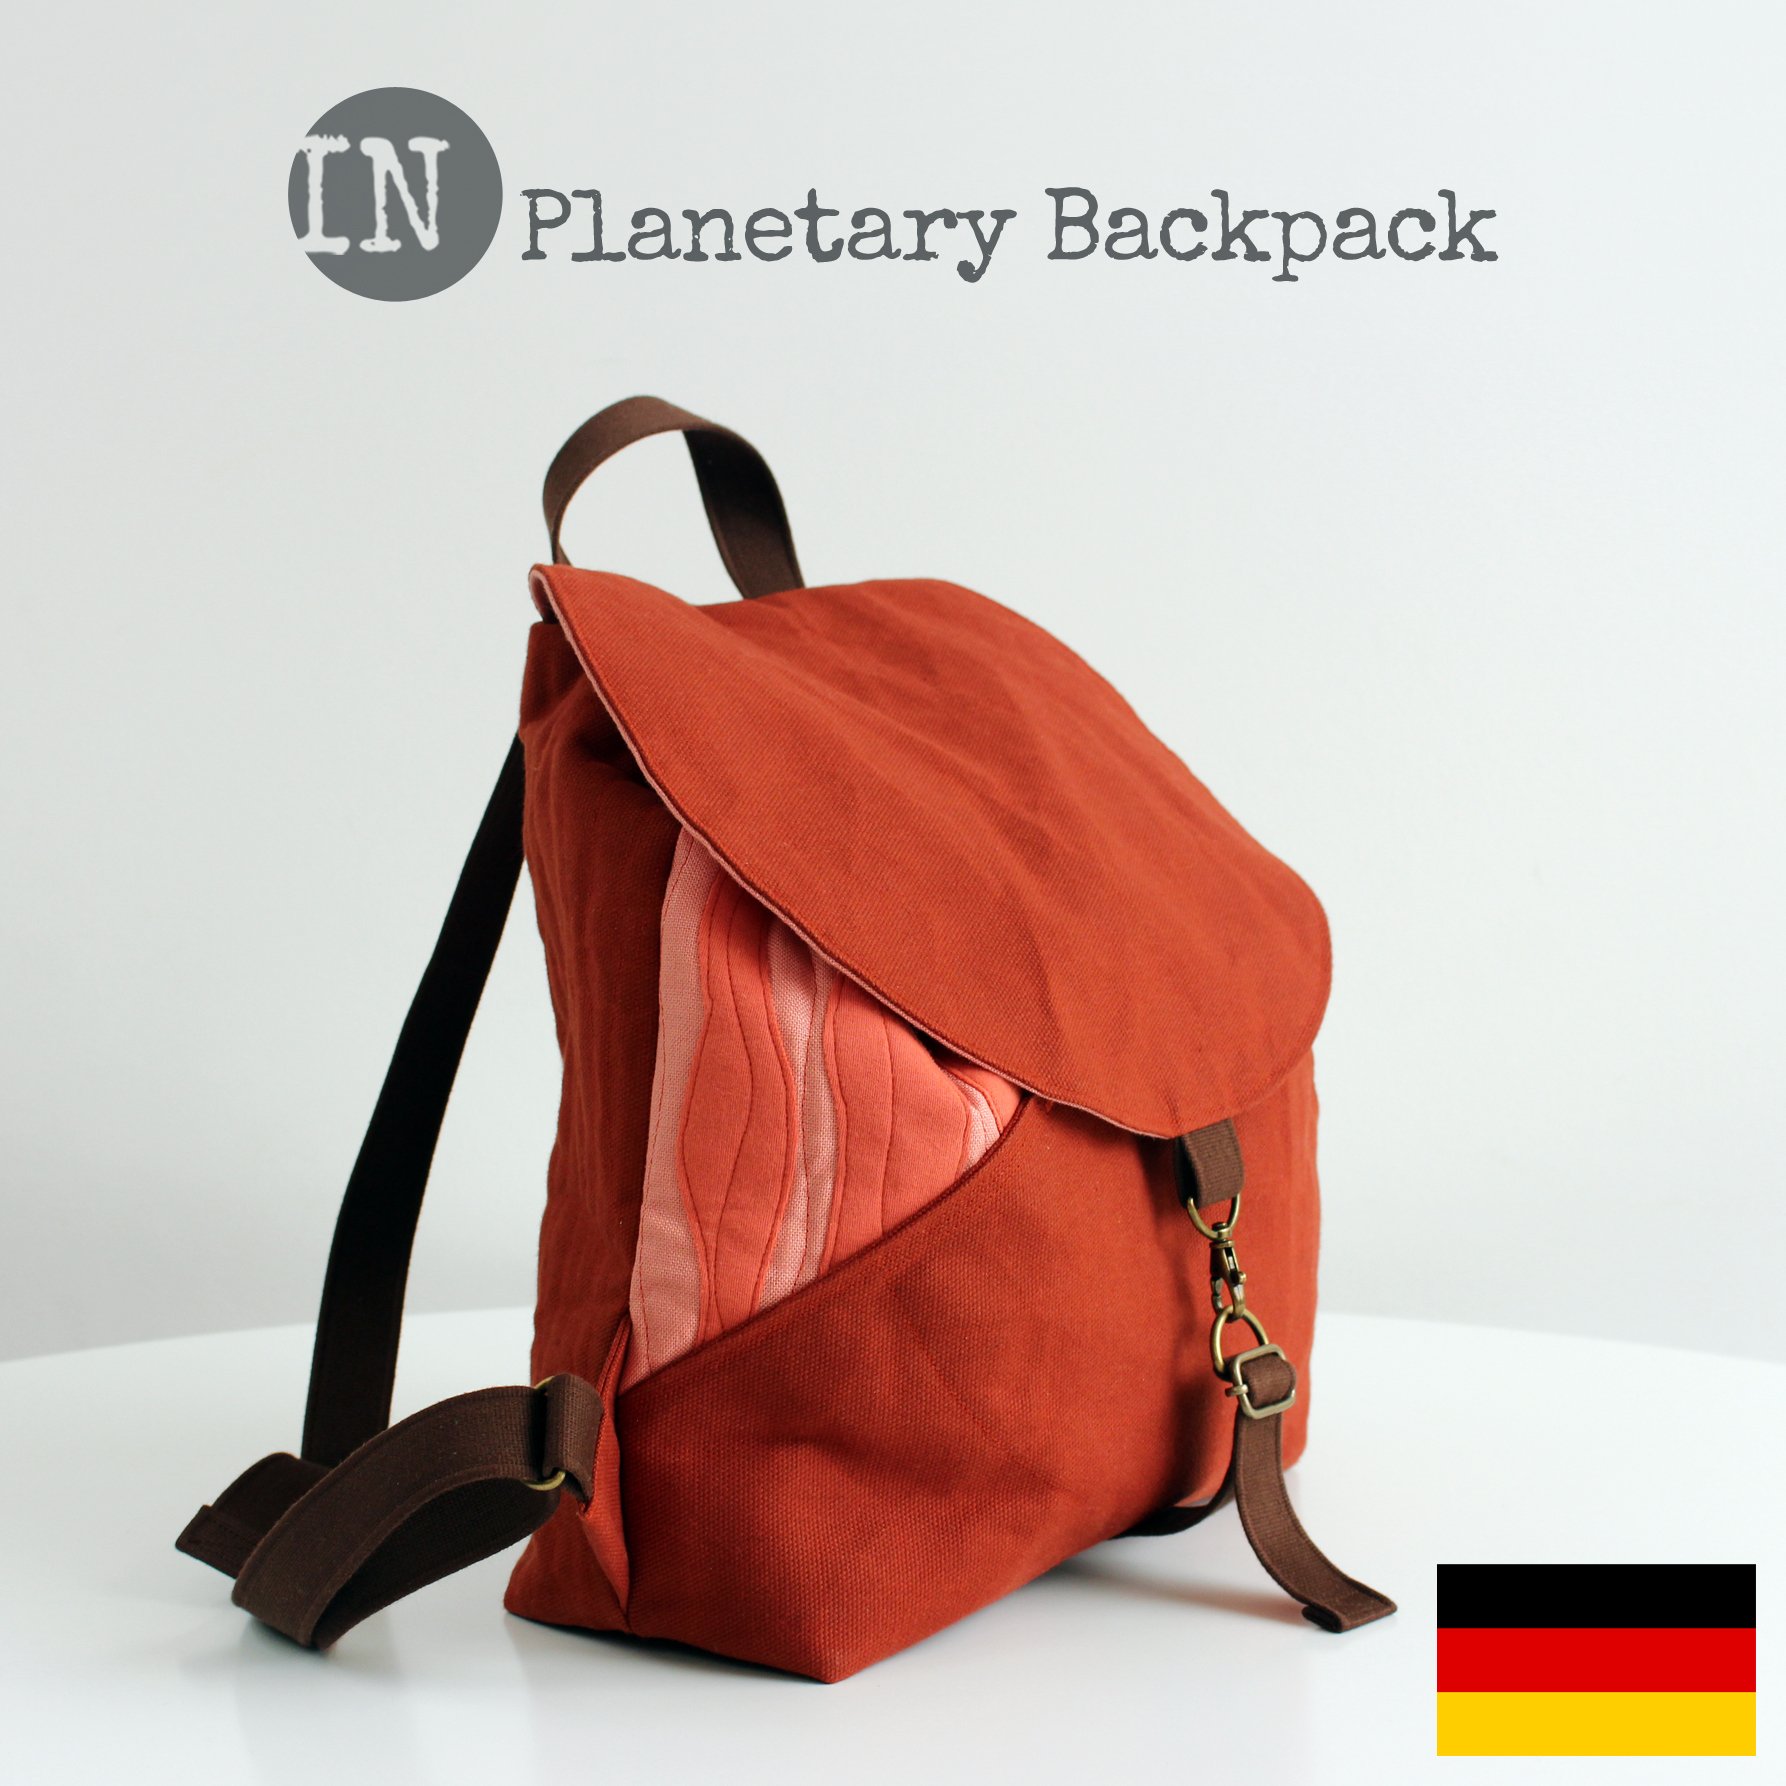 Planetary Backpack 06 DE.jpg